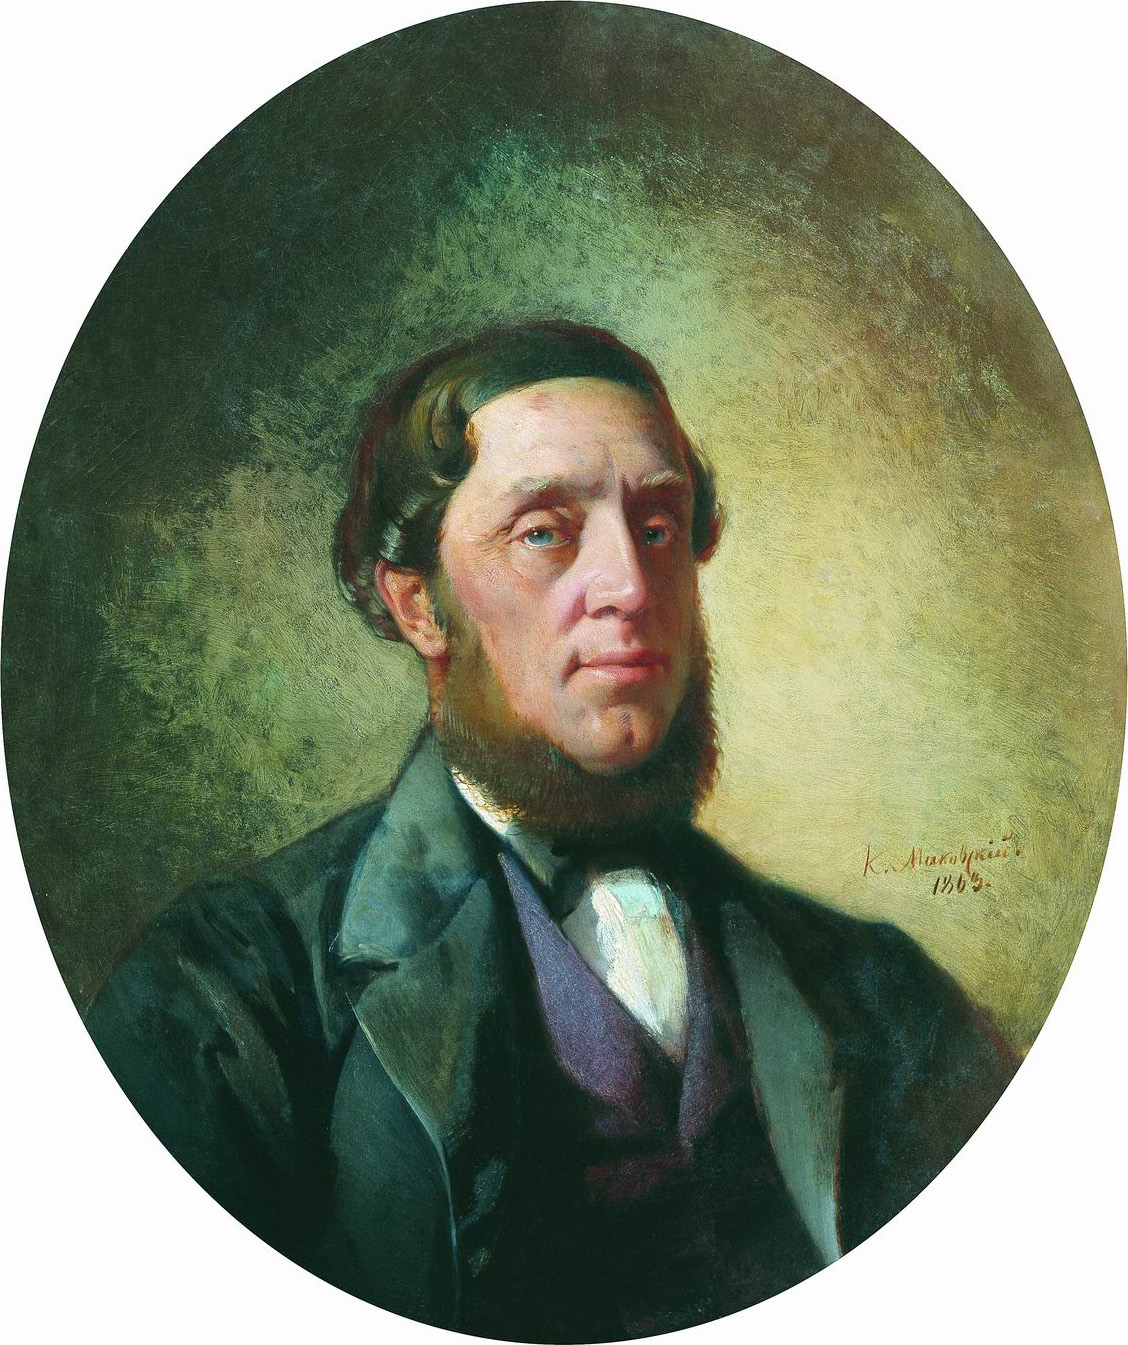 Маковский К.. Мужской портрет. 1863